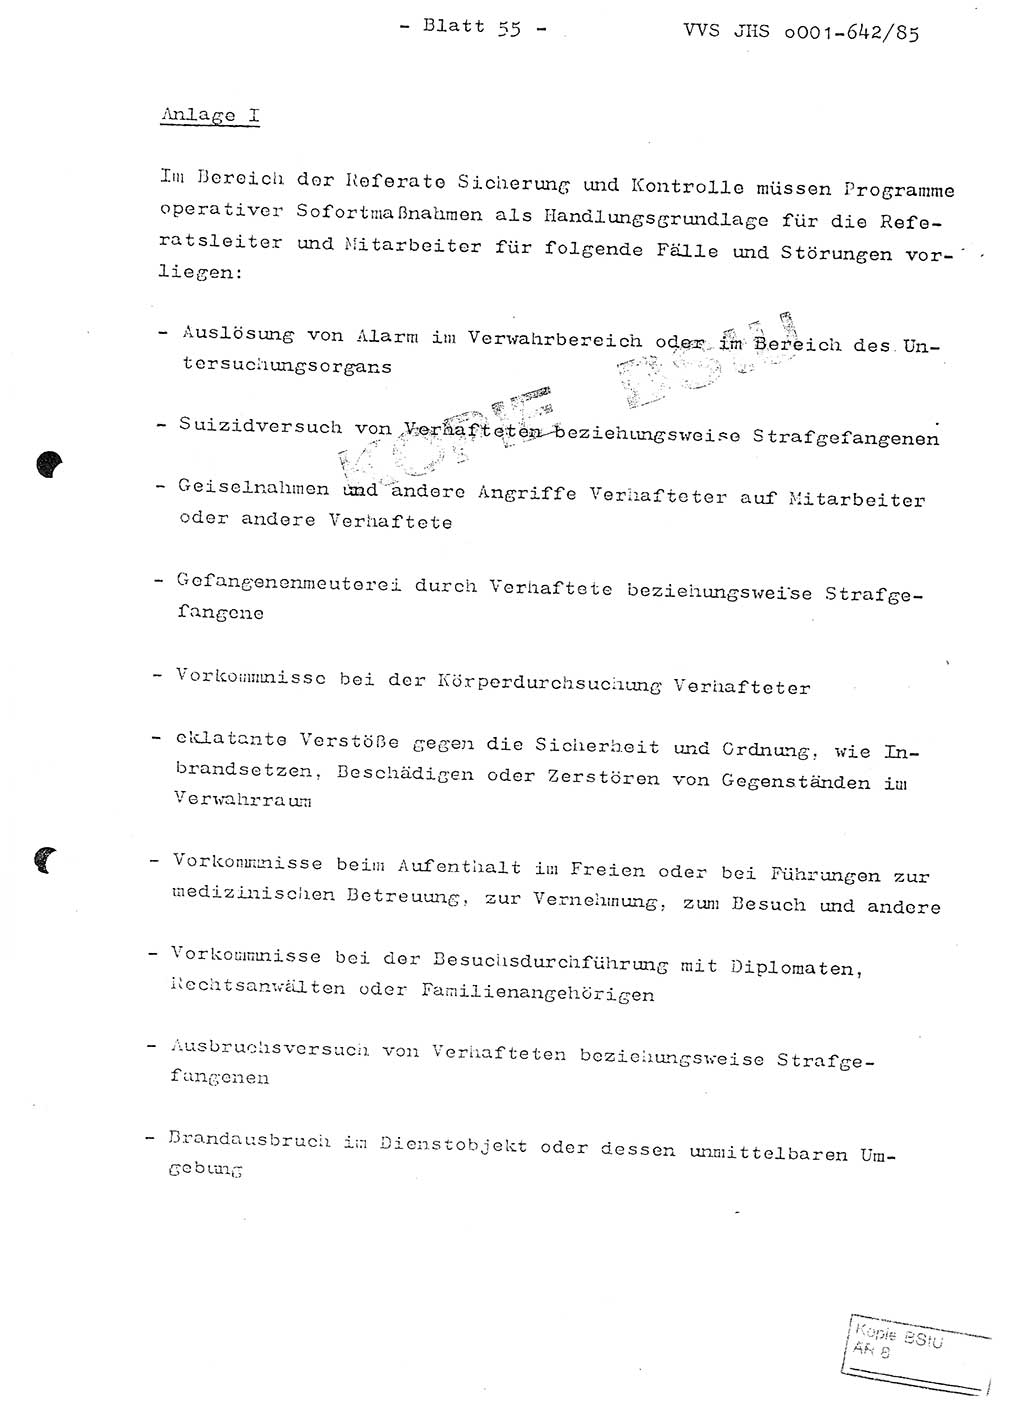 Fachschulabschlußarbeit Oberleutnant Lothar Fahland (Abt. ⅩⅣ), Ministerium für Staatssicherheit (MfS) [Deutsche Demokratische Republik (DDR)], Juristische Hochschule (JHS), Vertrauliche Verschlußsache (VVS) o001-642/85, Potsdam 1985, Blatt 55 (FS-Abschl.-Arb. MfS DDR JHS VVS o001-642/85 1985, Bl. 55)